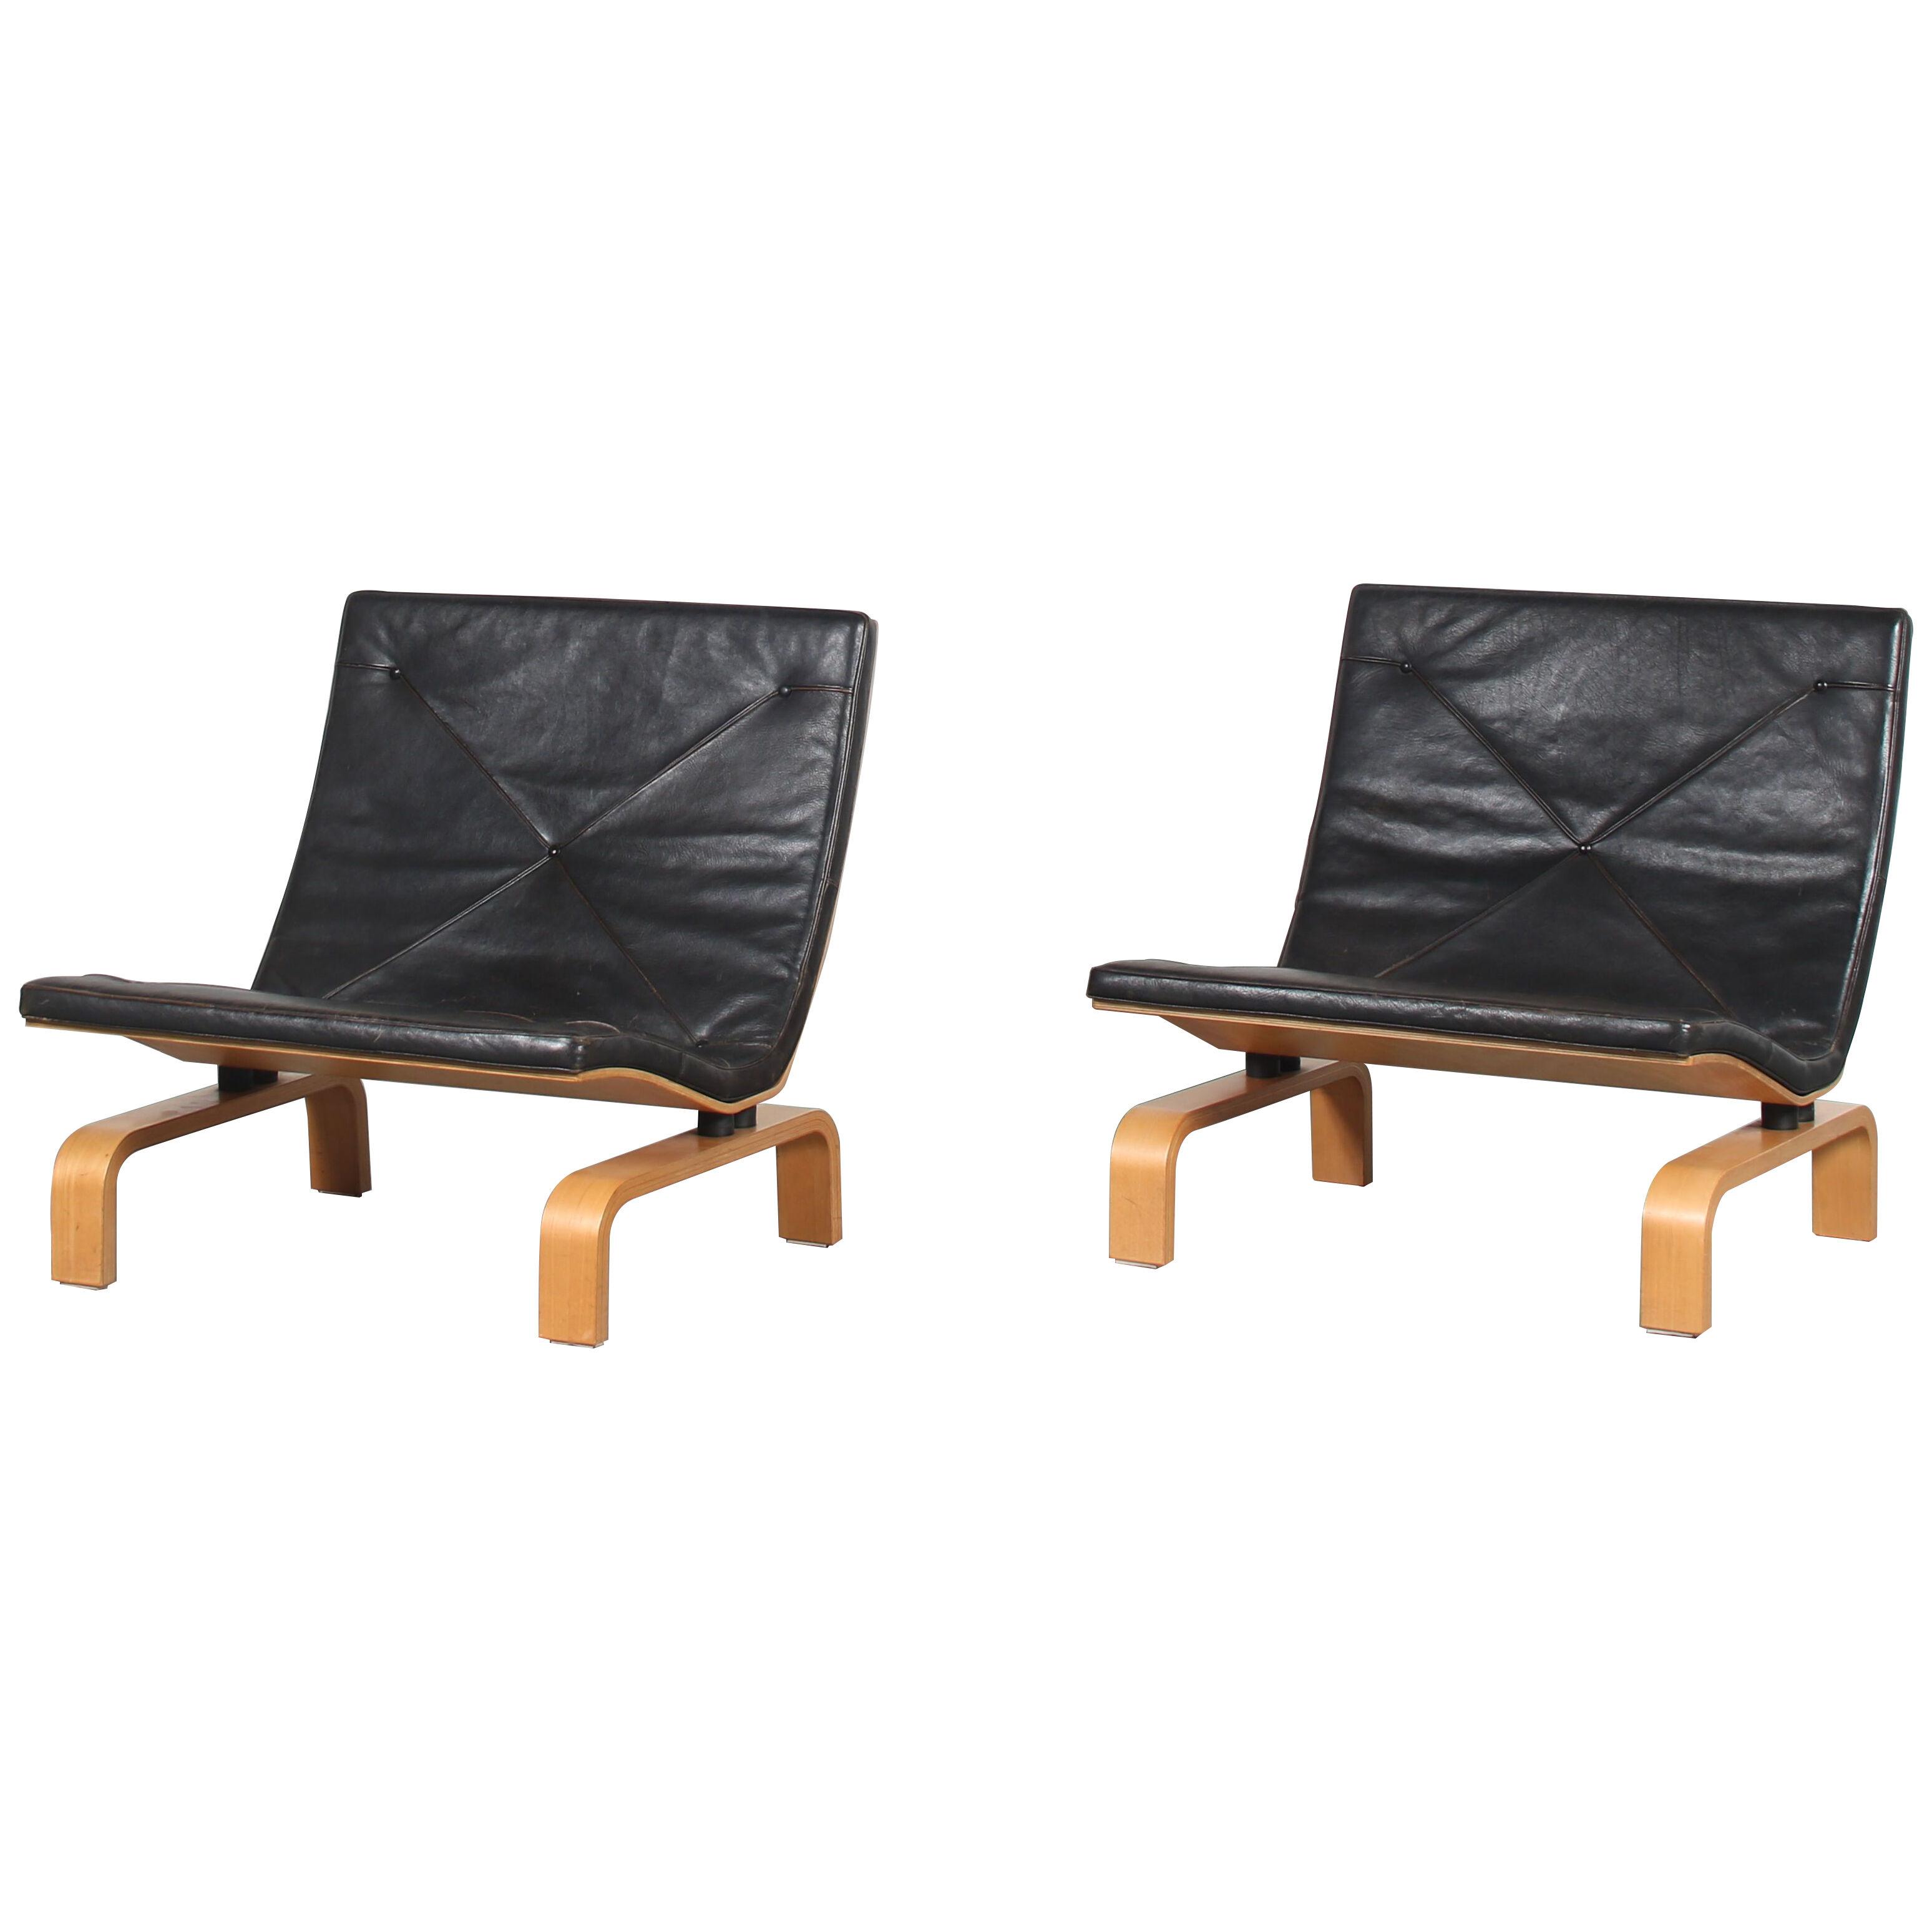 Poul Kjaerholm “PK27” Lounge Chairs for Kold Christensen, Denmark 1970